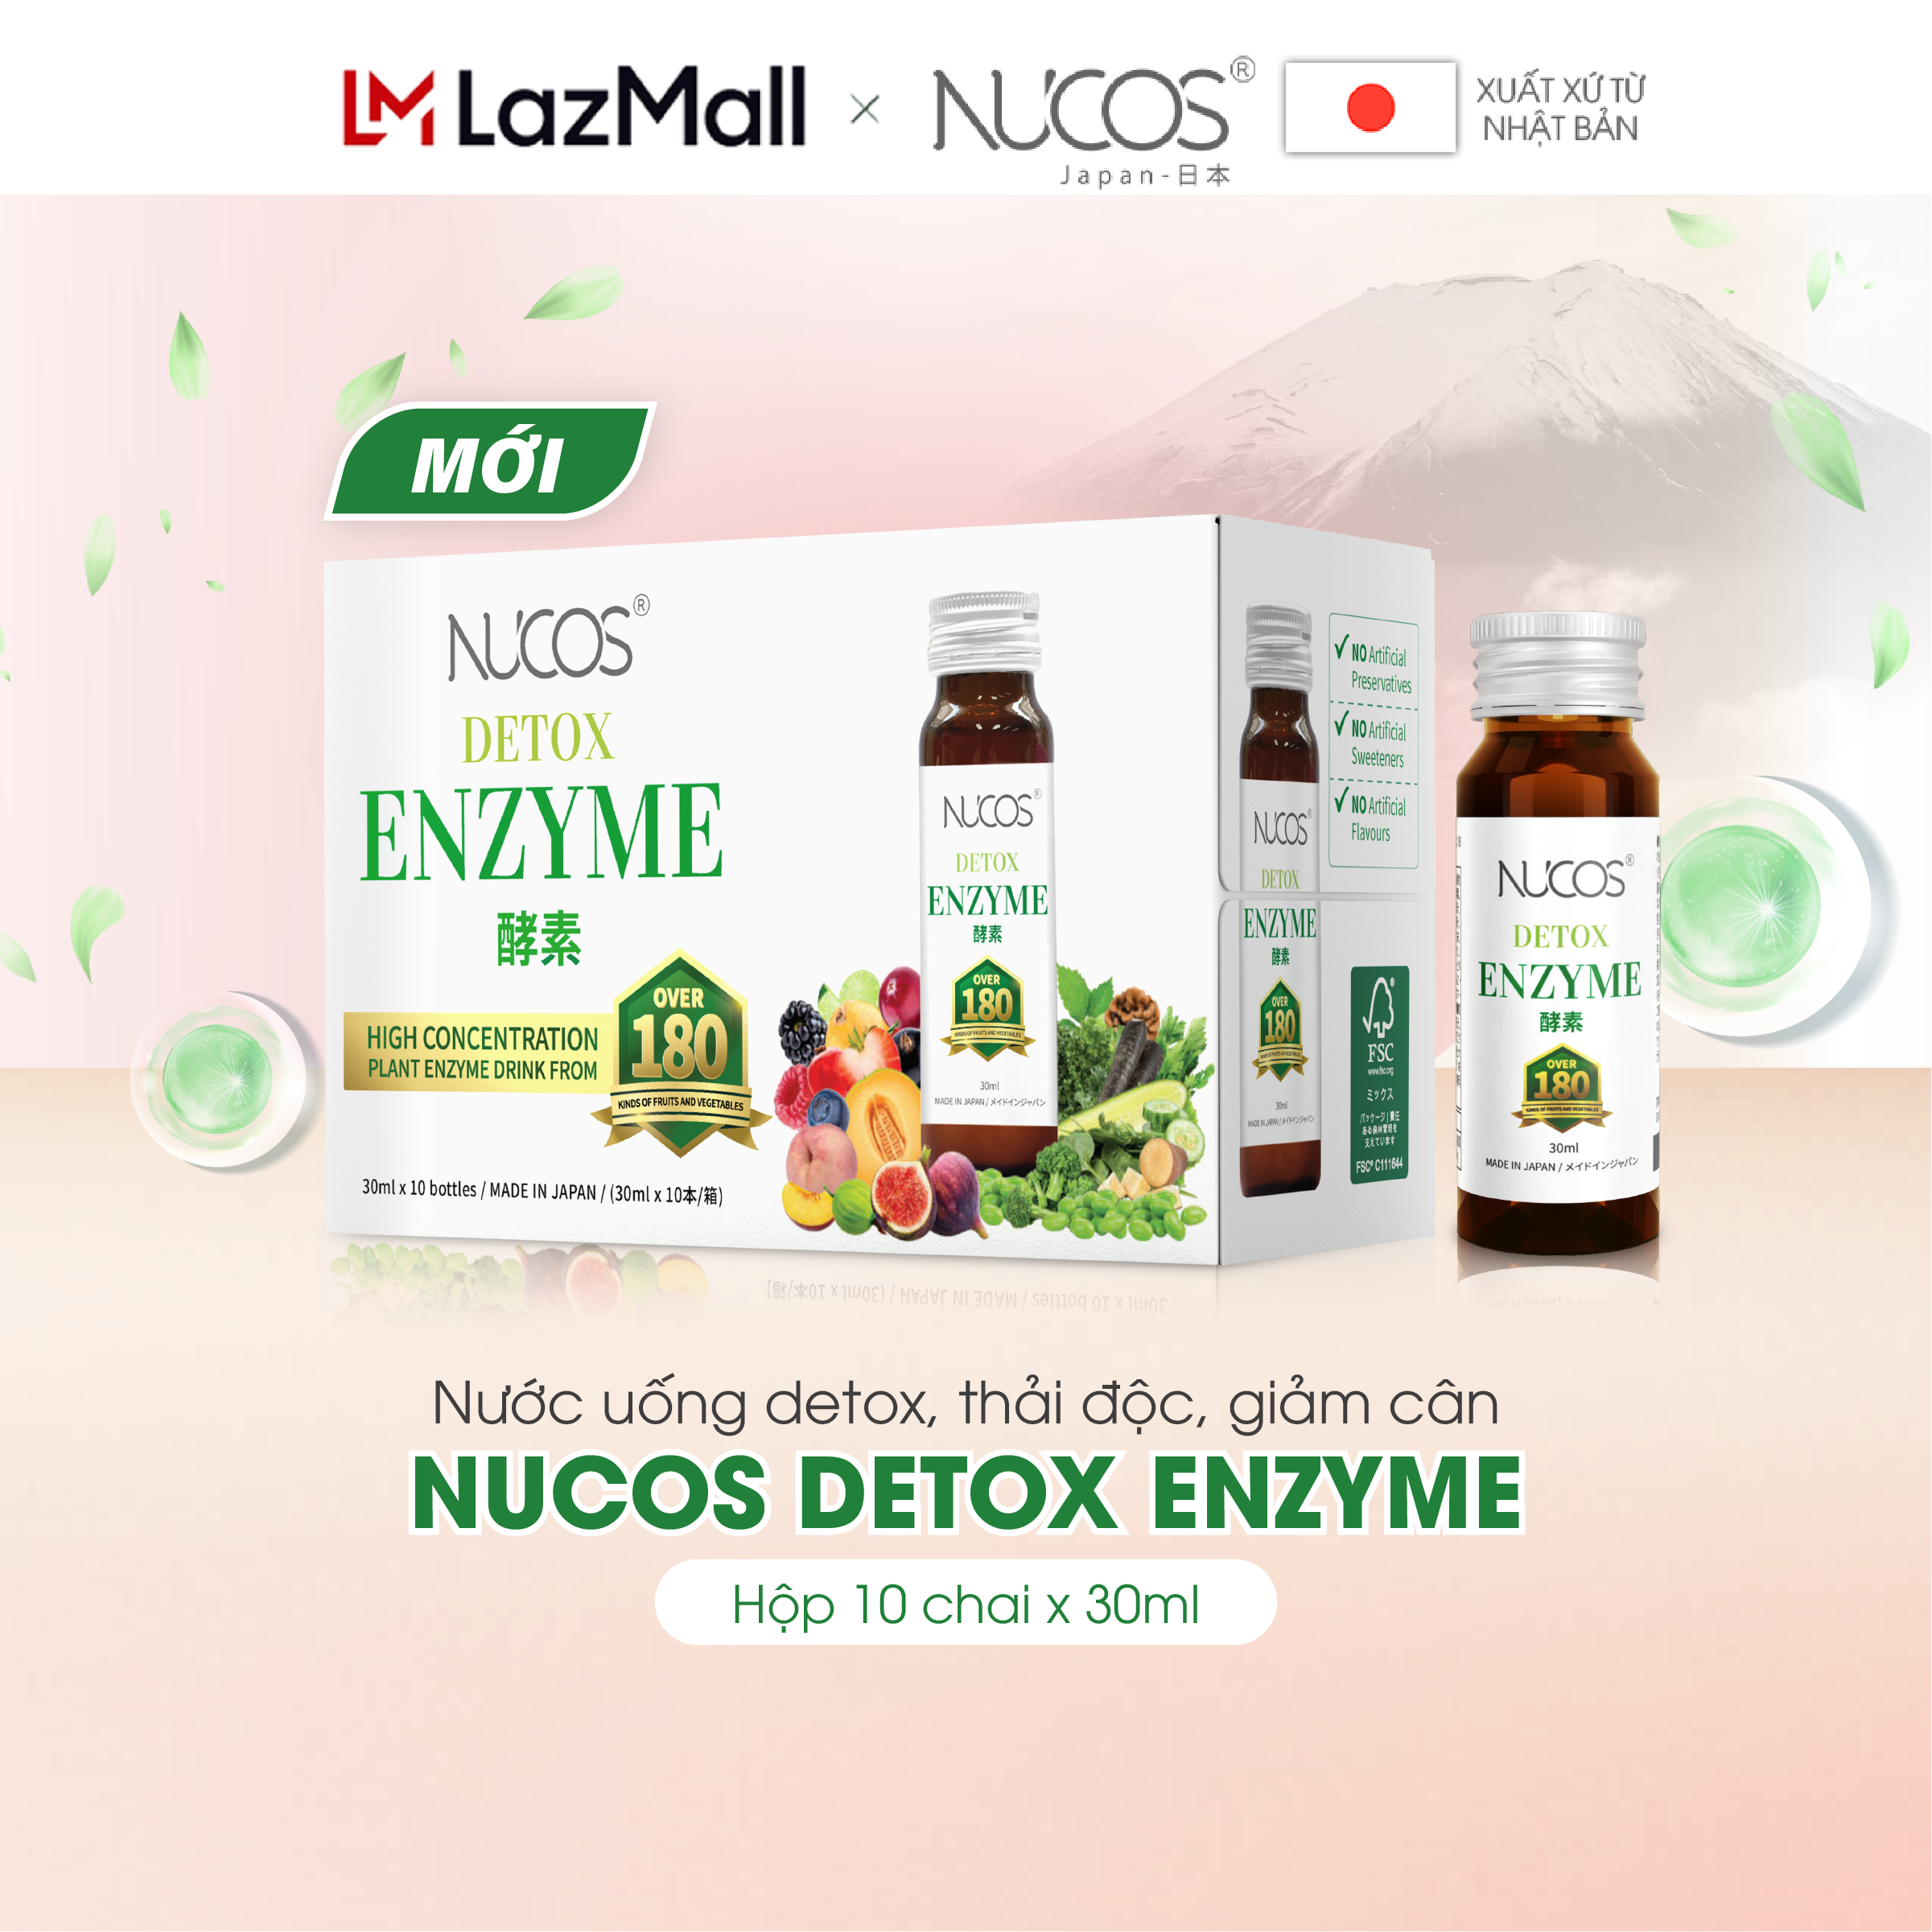 [GIFT] Nước detox enzyme hỗ trợ thải độc Nucos Detox Enzyme hộp 10 chai x 30ml​